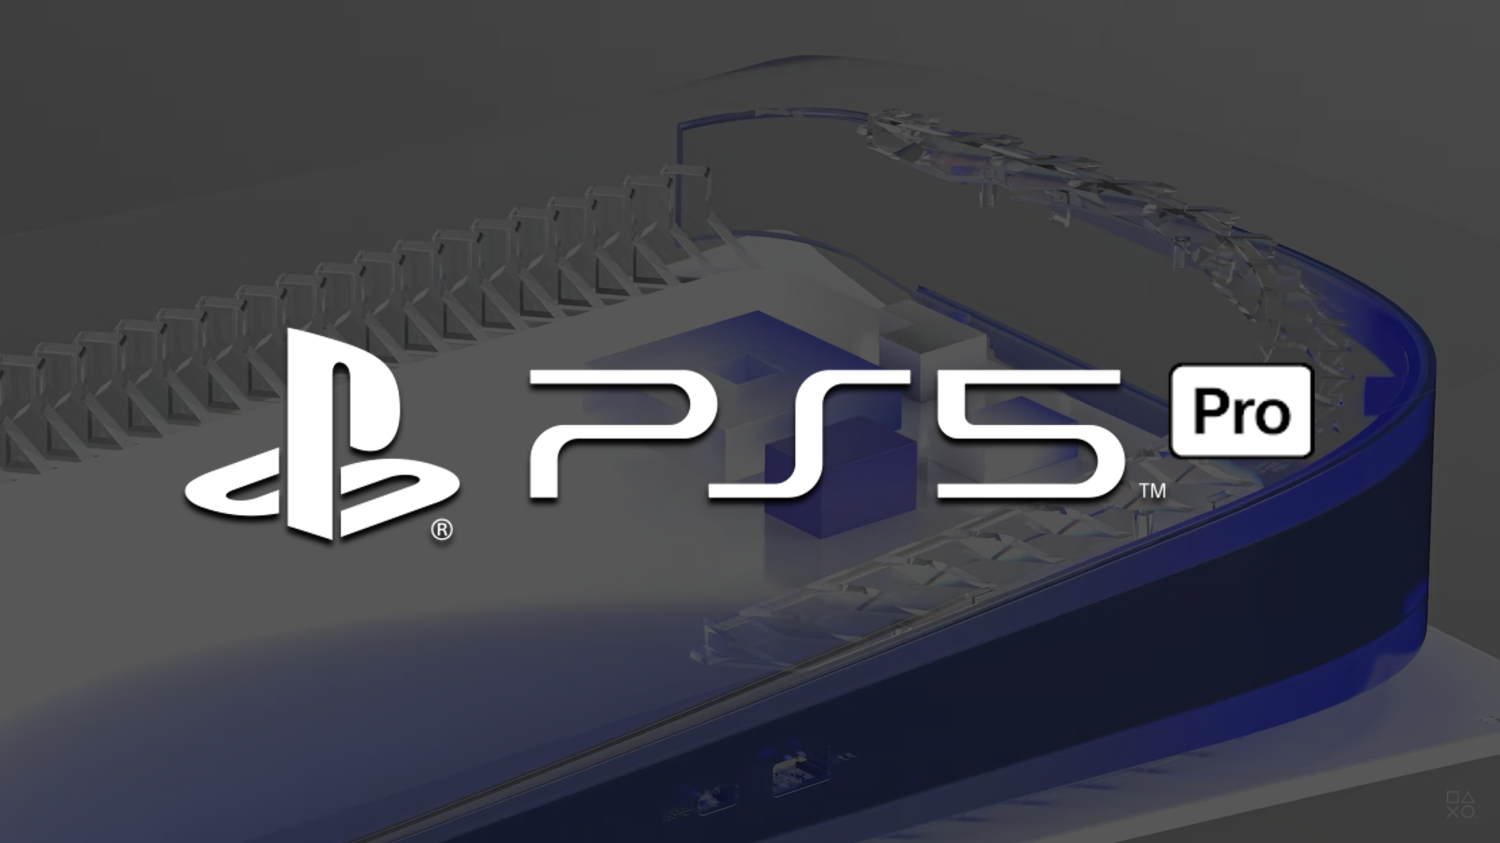 La PS5 Pro se dévoile : un monstre de puissance avec GPU RDNA 3 et